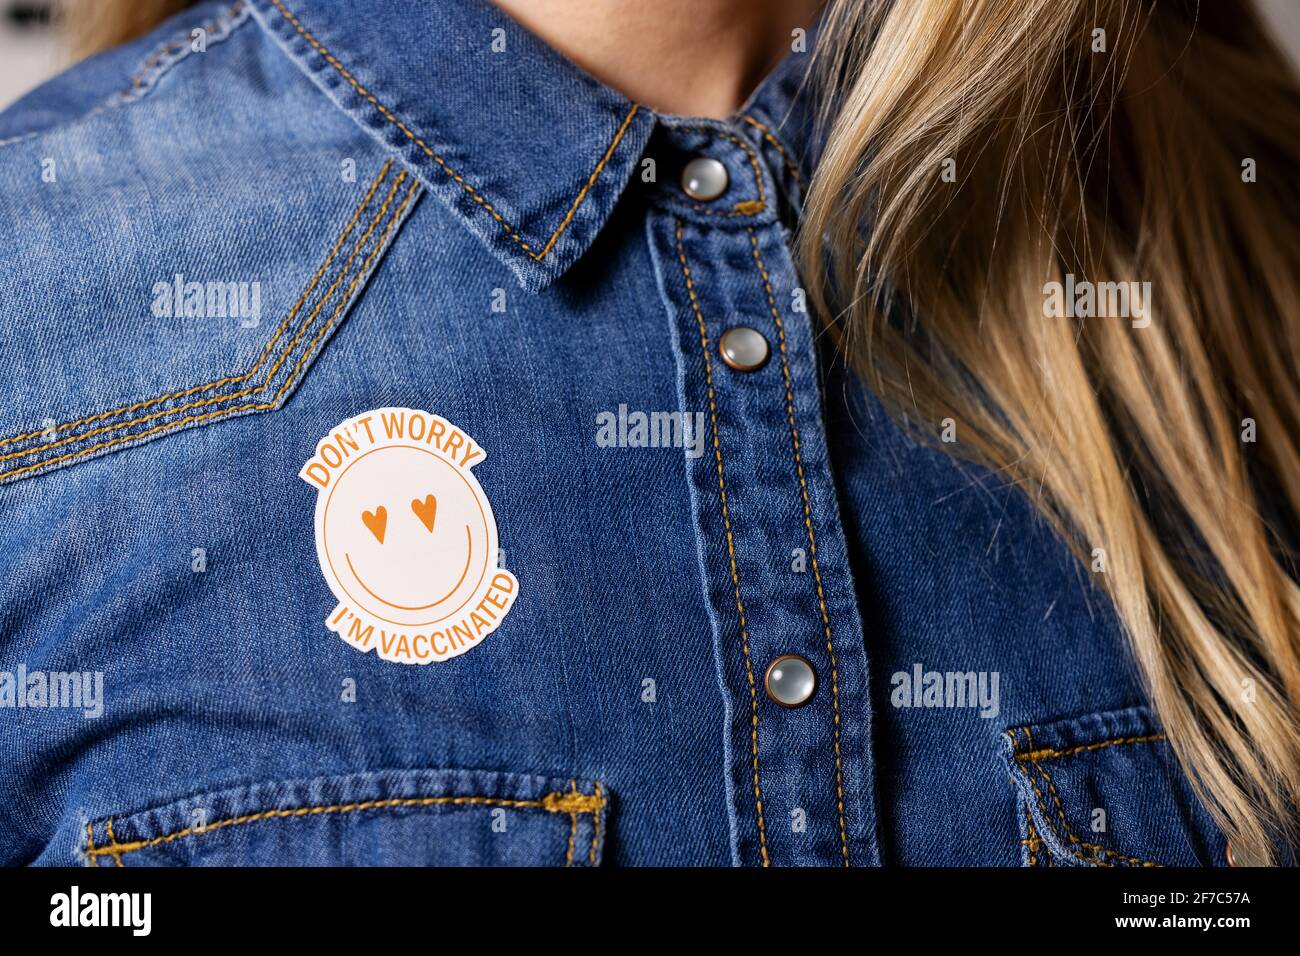 Geimpfte Person mit Immunitätskennzeichnung auf dem Hemd Stockfoto